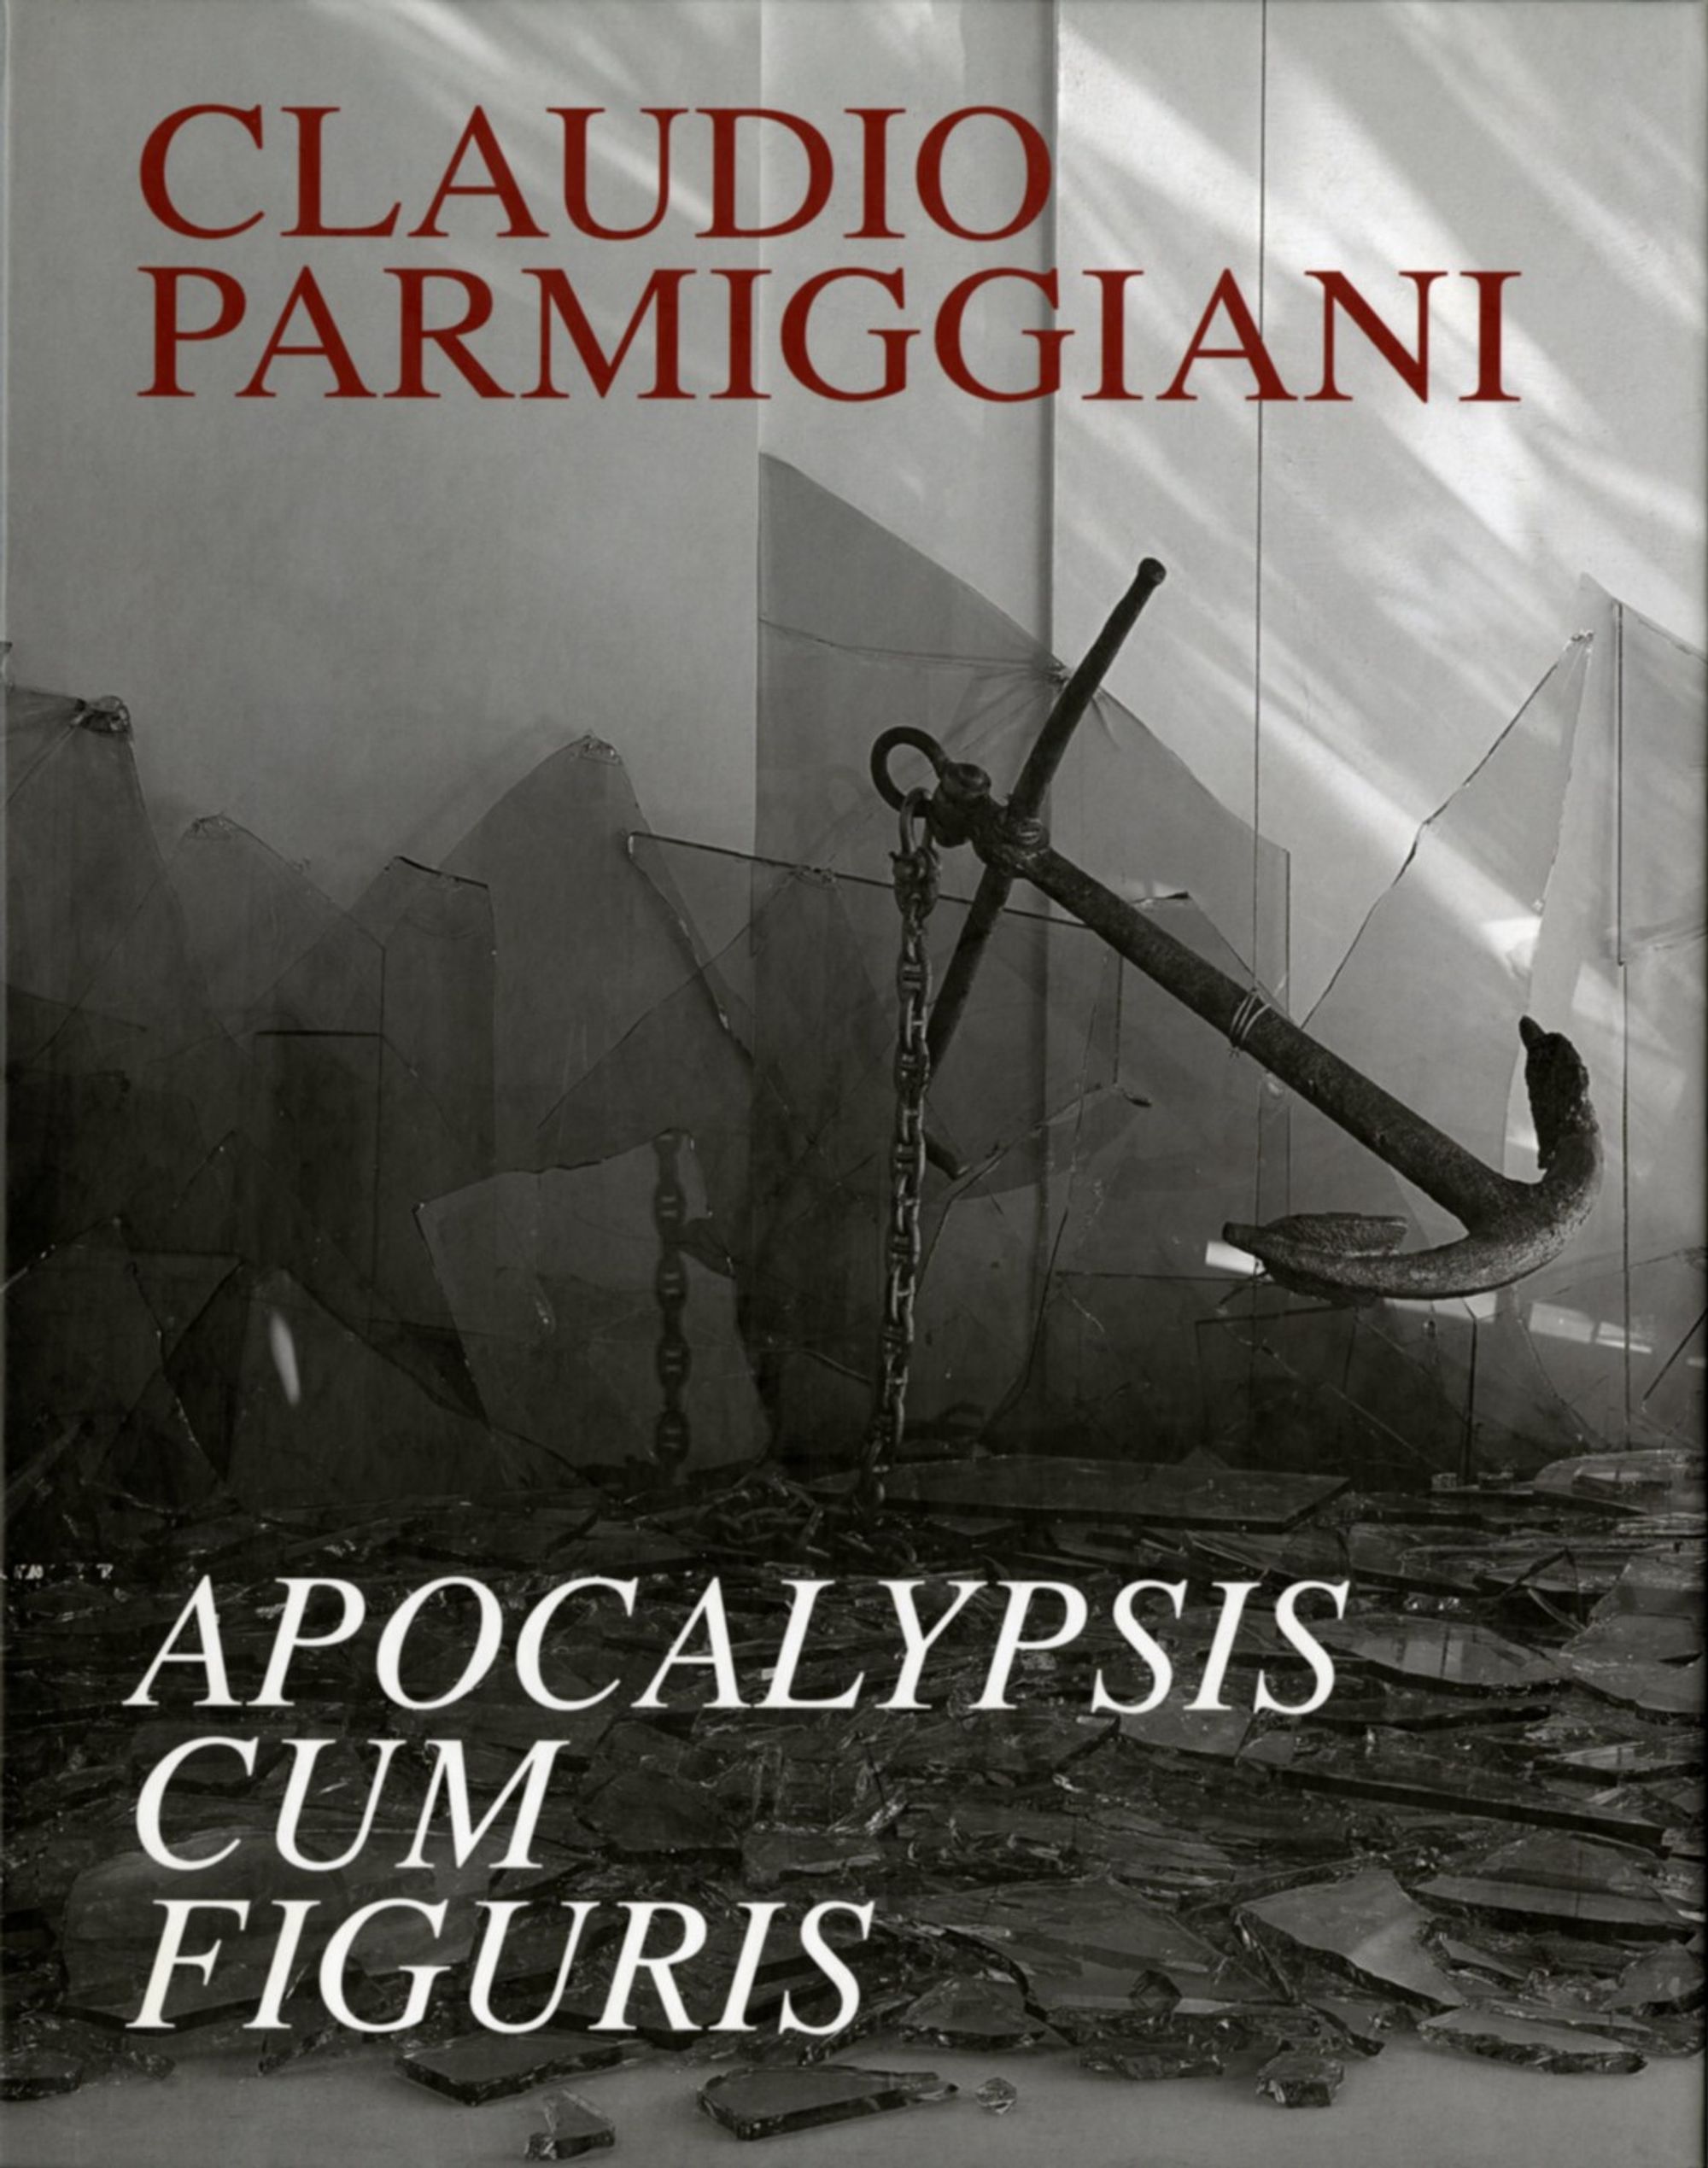 Detail view of Claudio Parmiggiani: Apocalypsis cum Figuris against a plain gray background